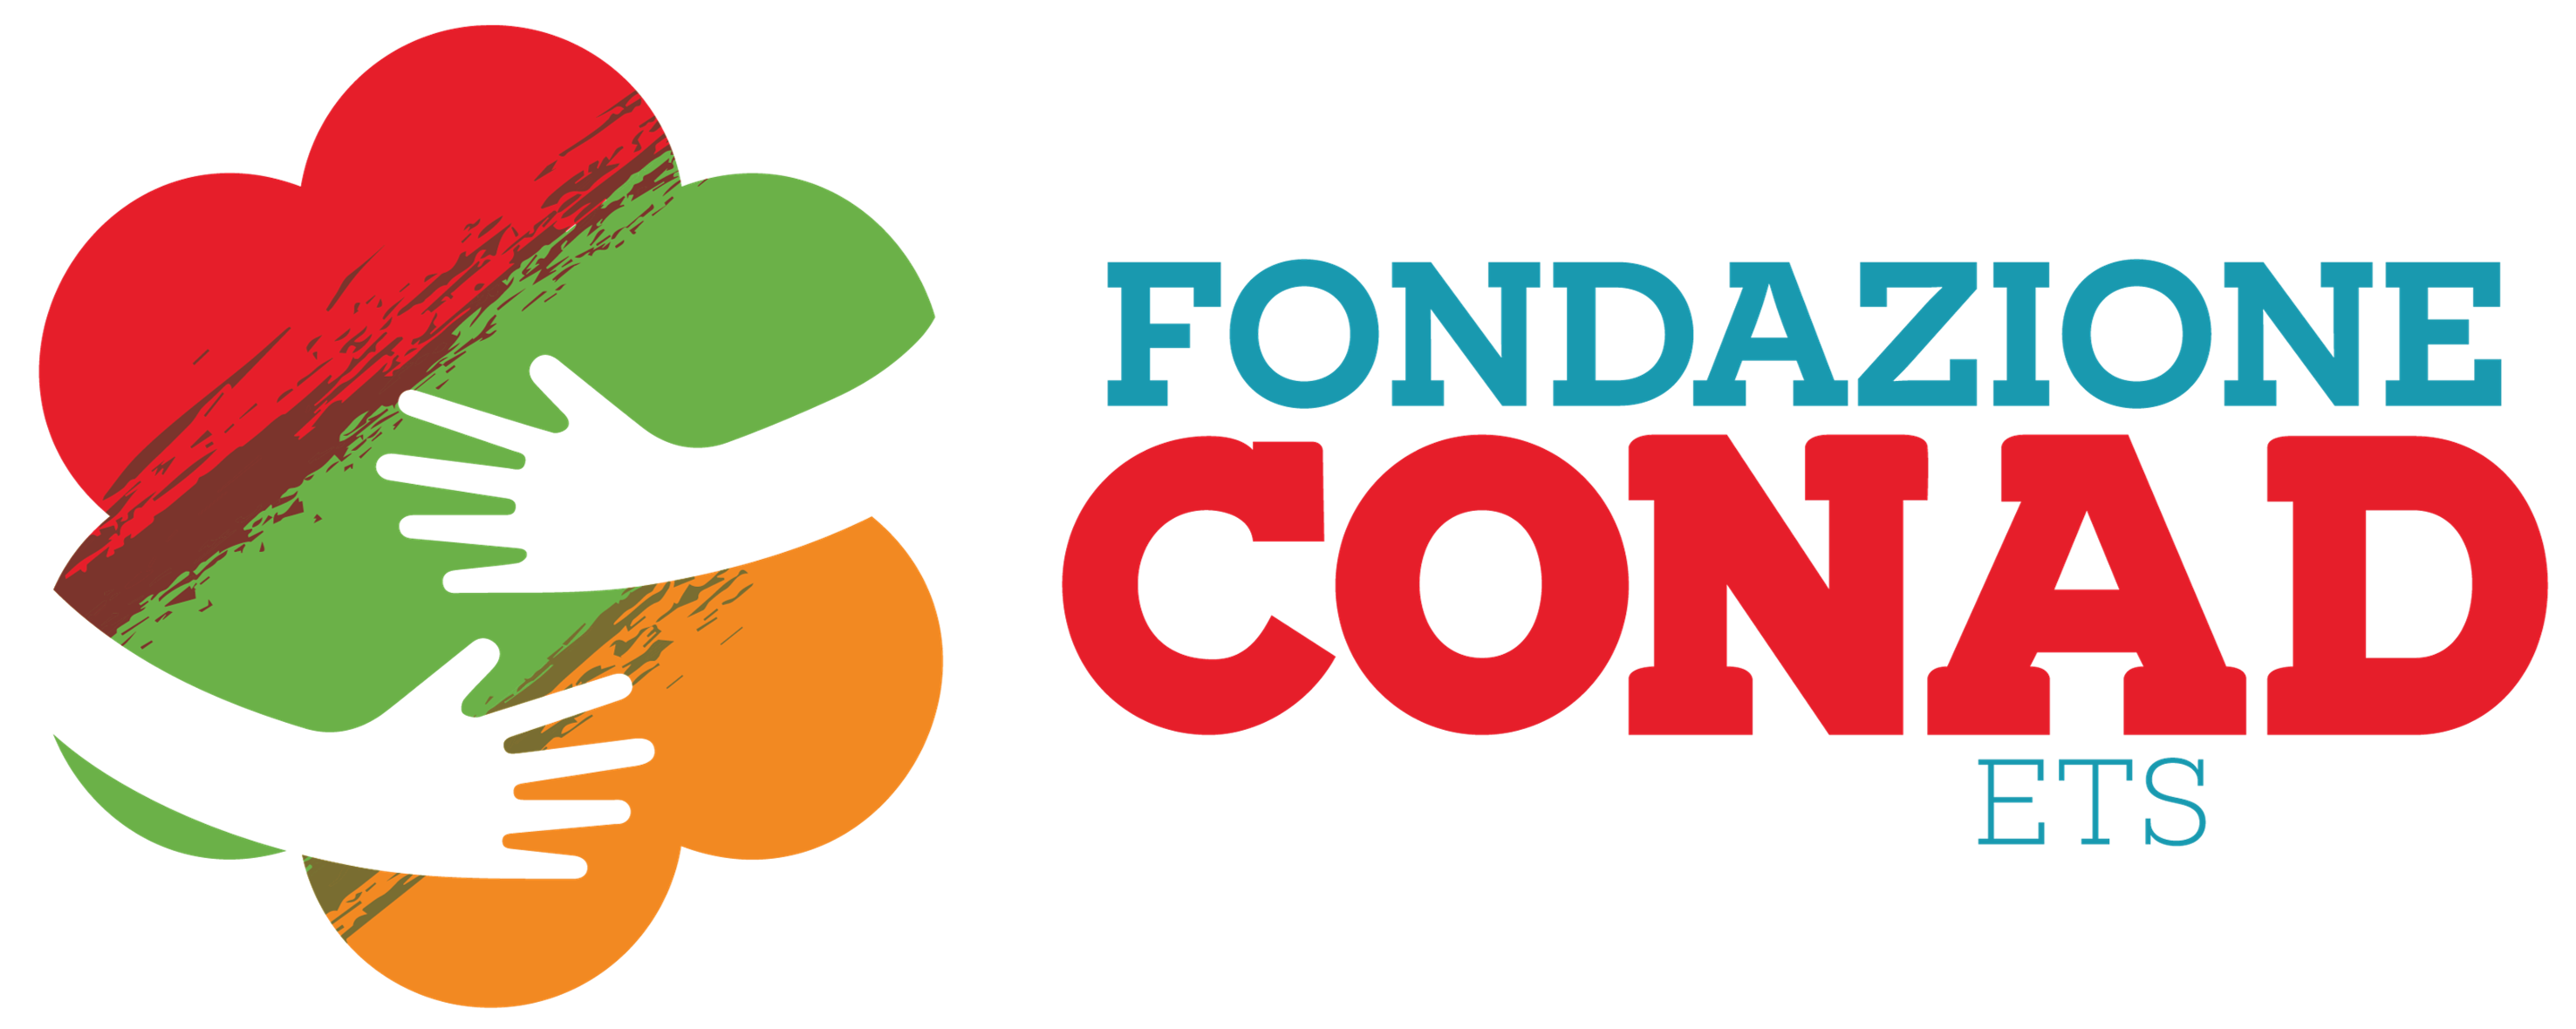 Fondazione Conad Ets | Conad